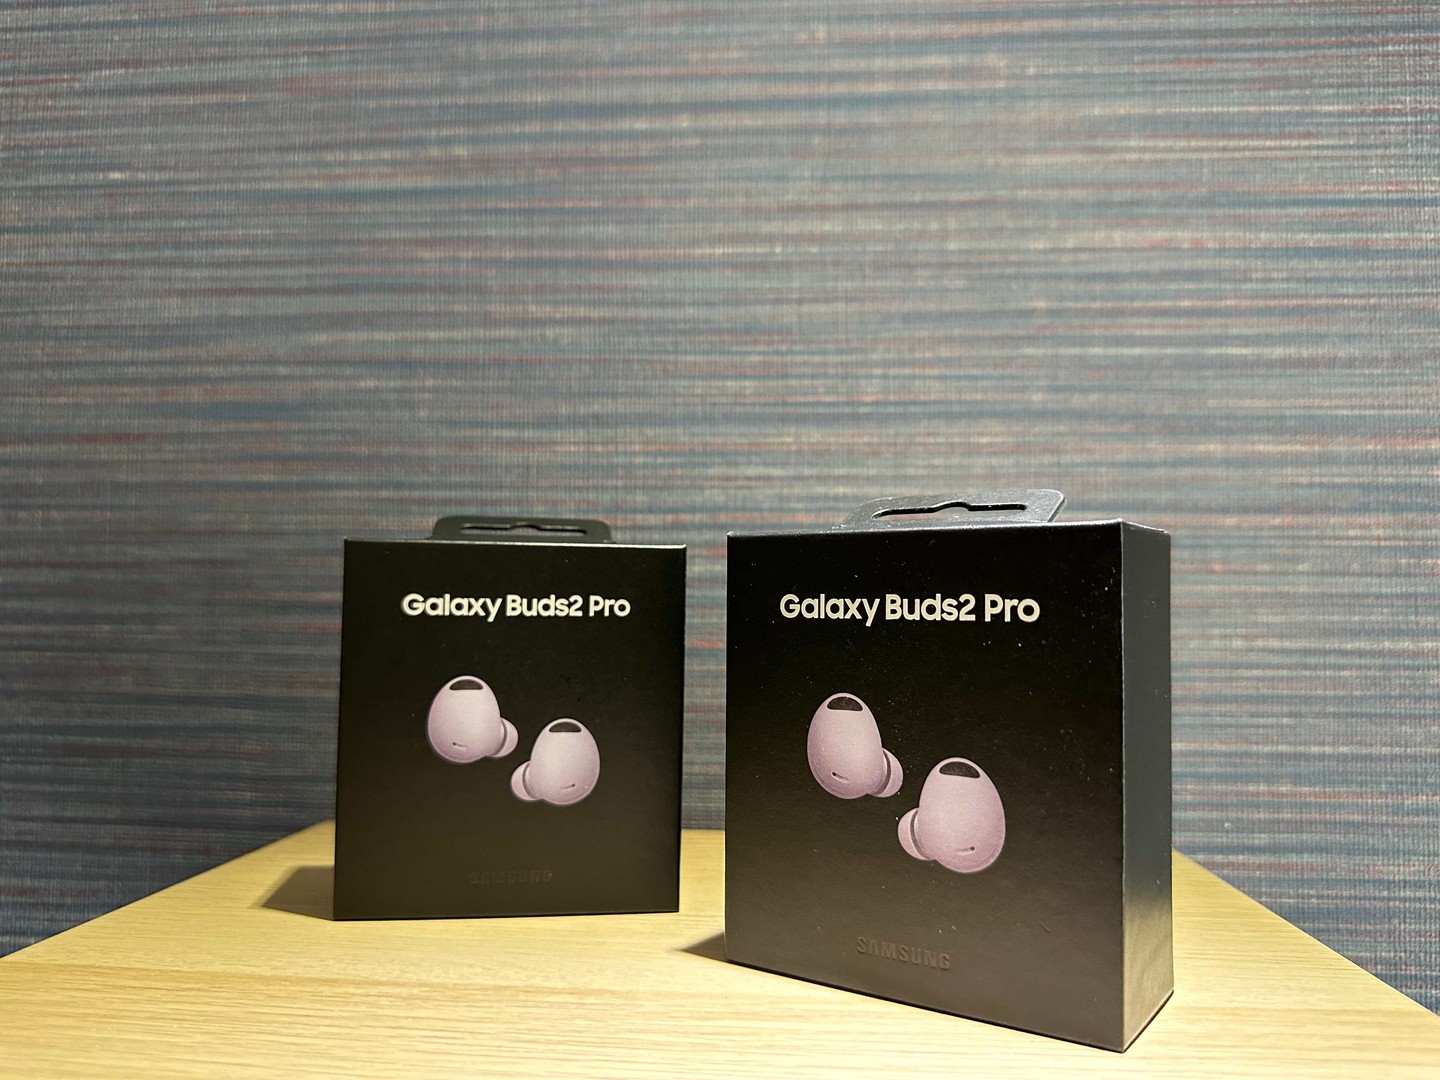 accesorios para electronica - Vendo Samsung Galaxy Buds2 Pro Purple Nuevos | Originales RD$ 10,800 NEG
